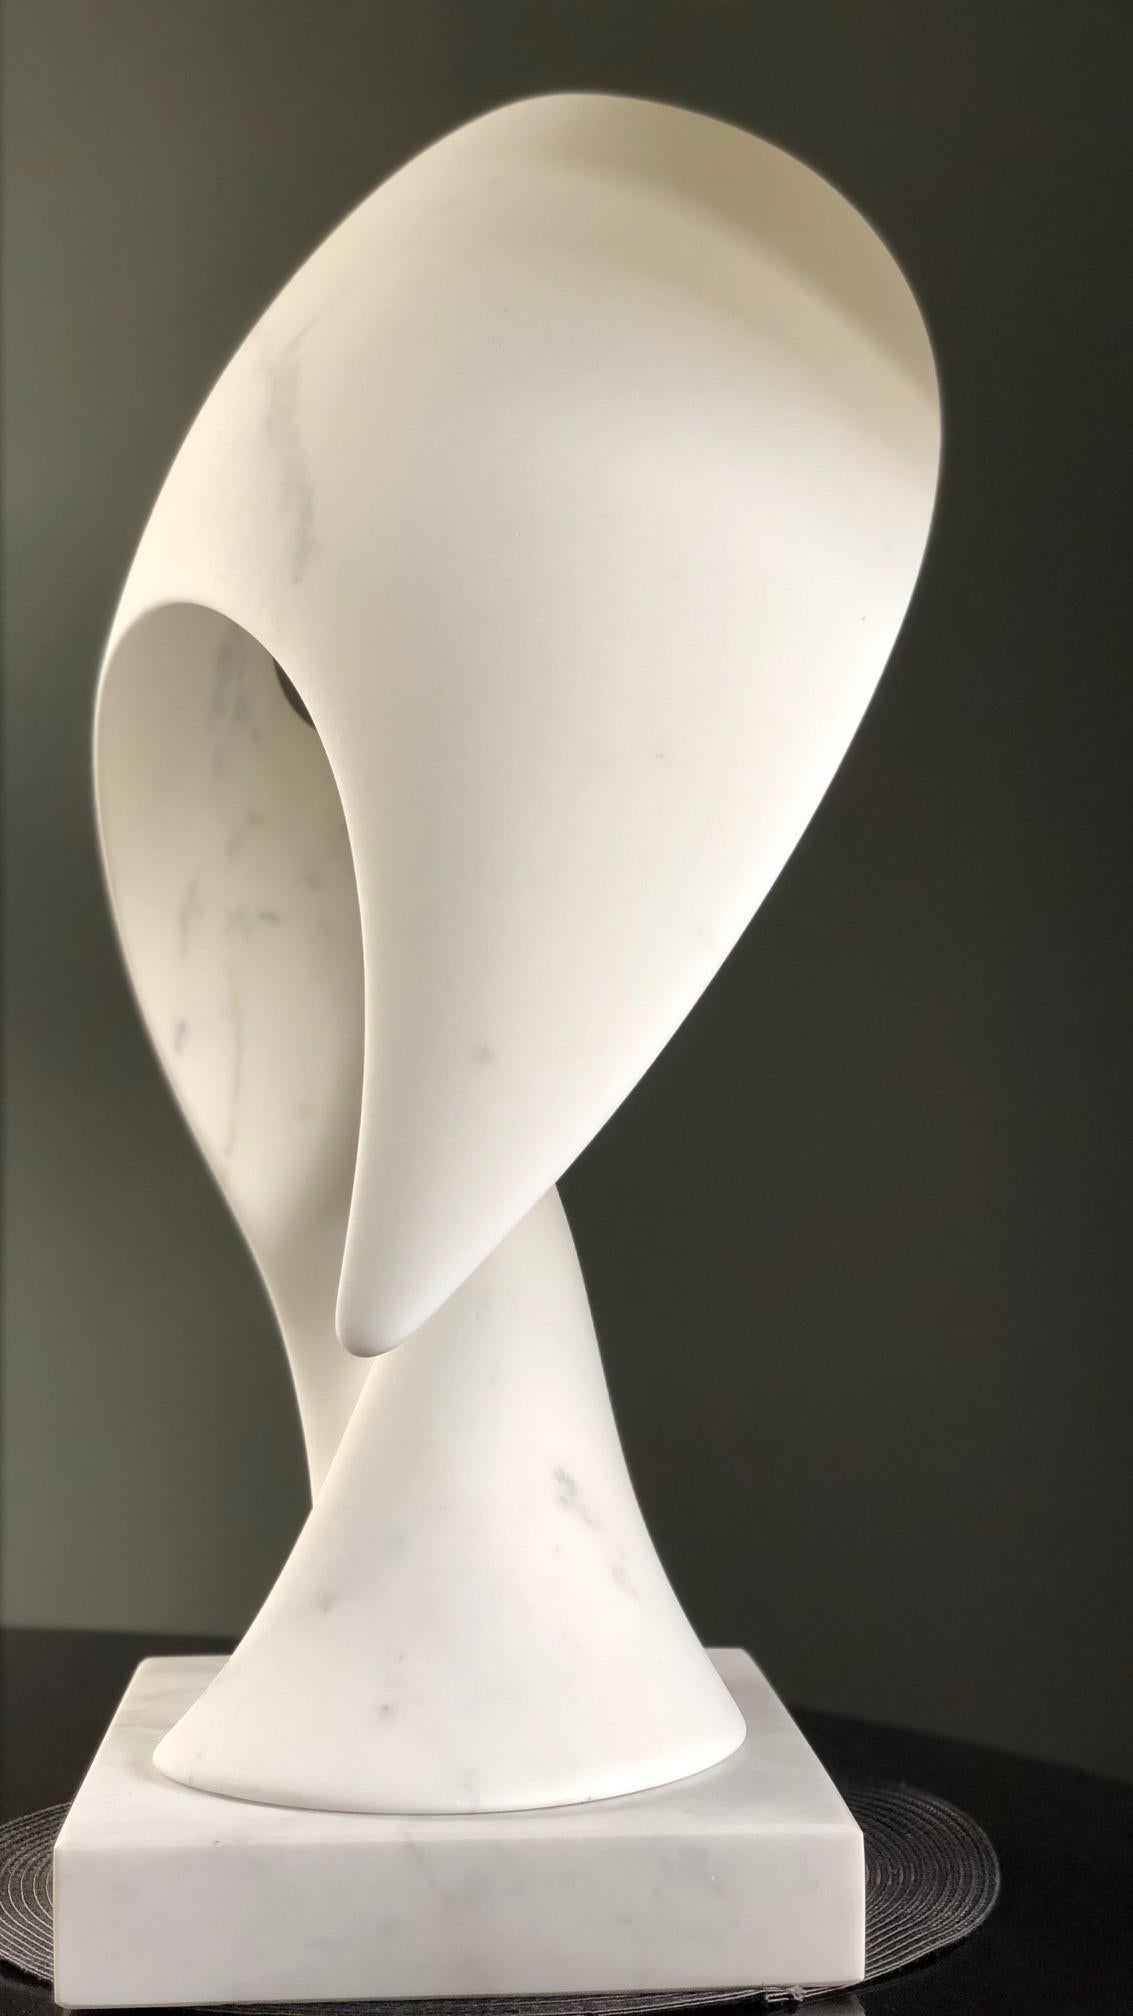 Transformation, Britischer Bildhauer, Abstrakt, Marmor, Italienischer Carrara, Philosophie – Sculpture von Ian Thomson